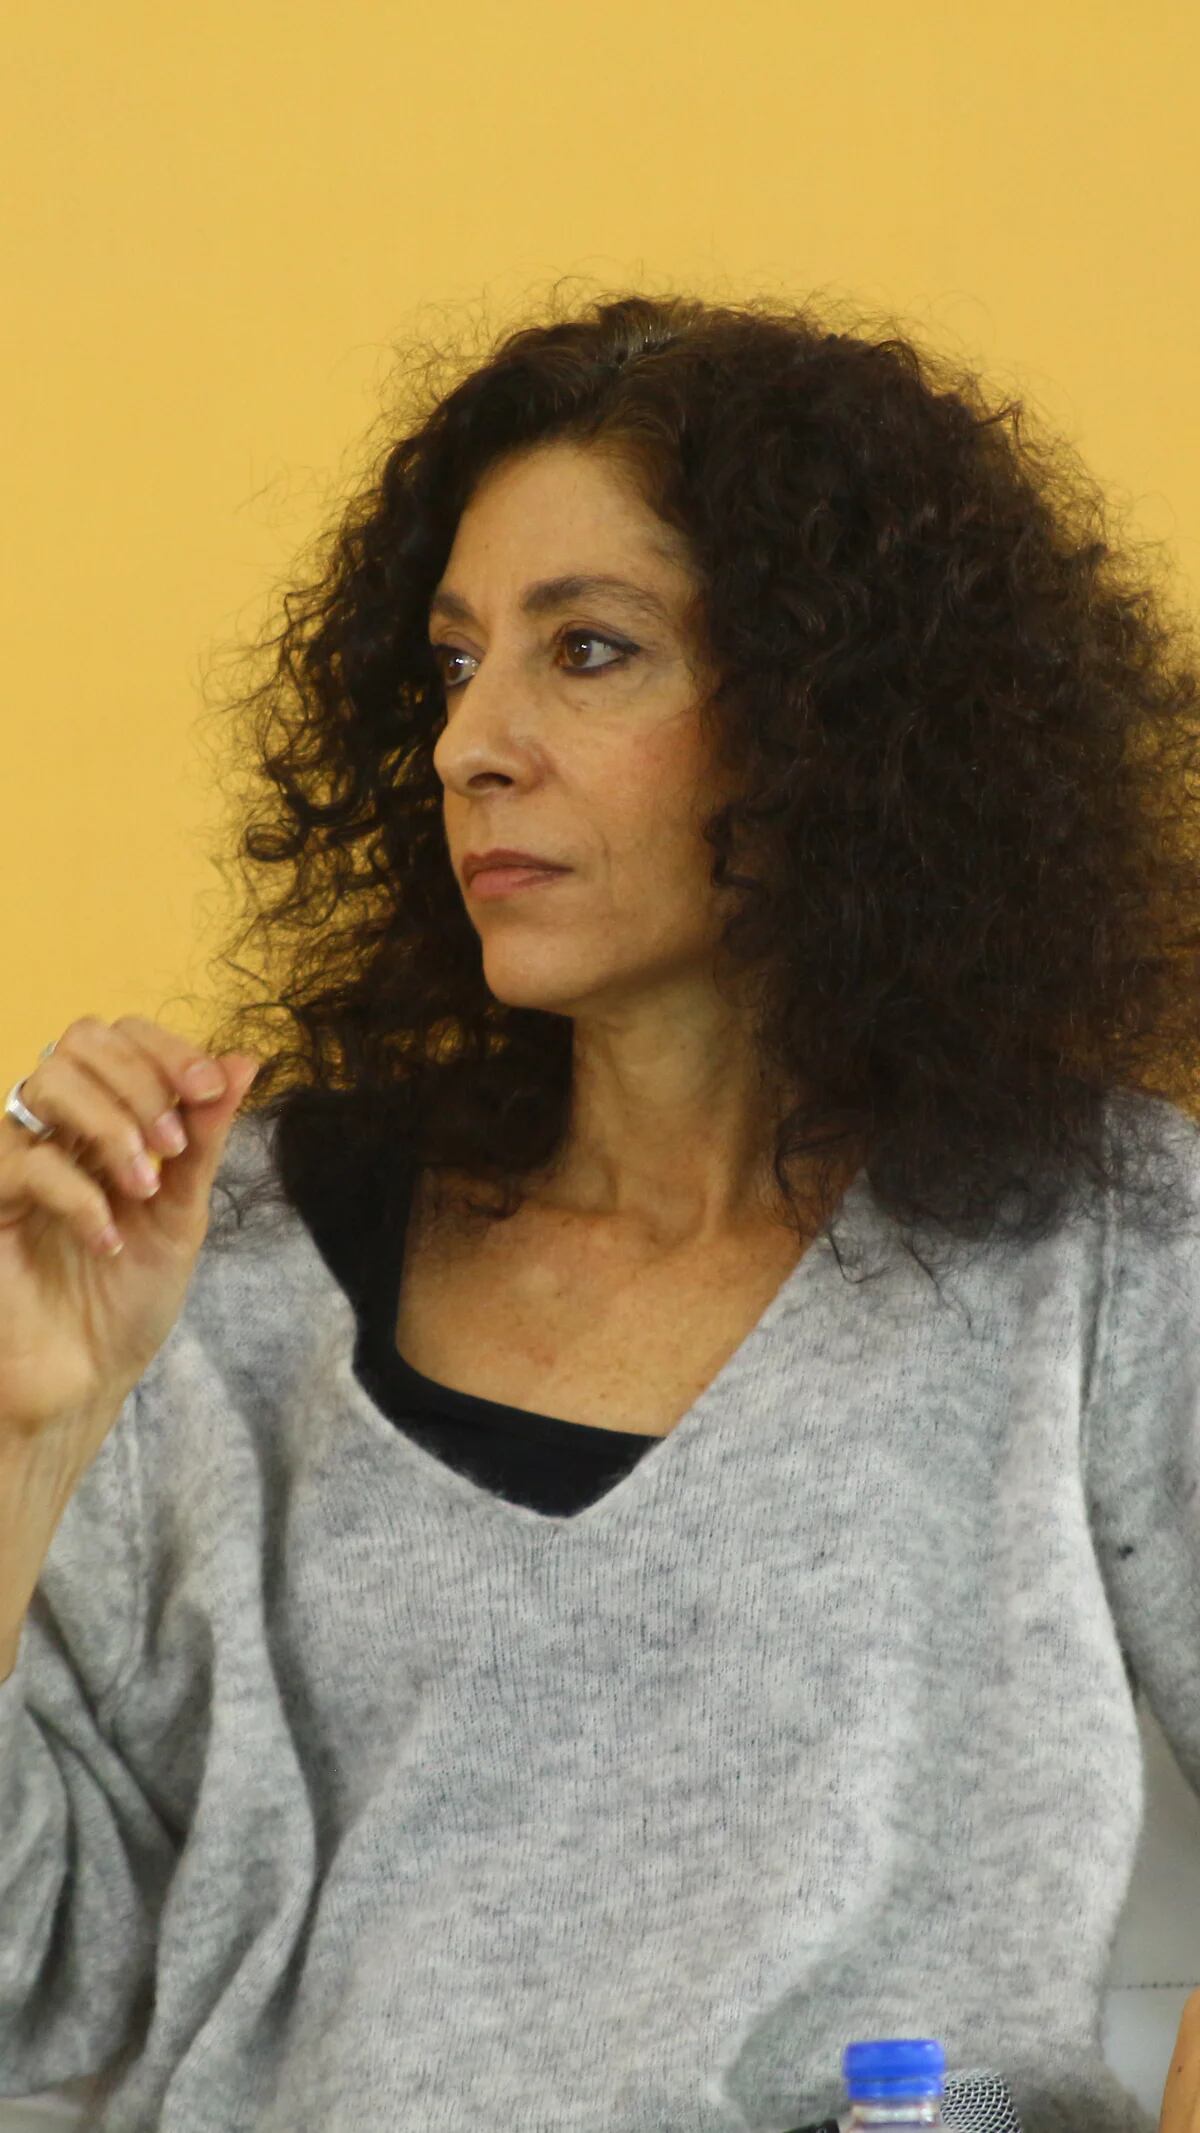 Leila Guerriero: El consentimiento sería difícil de entender hace 15 años